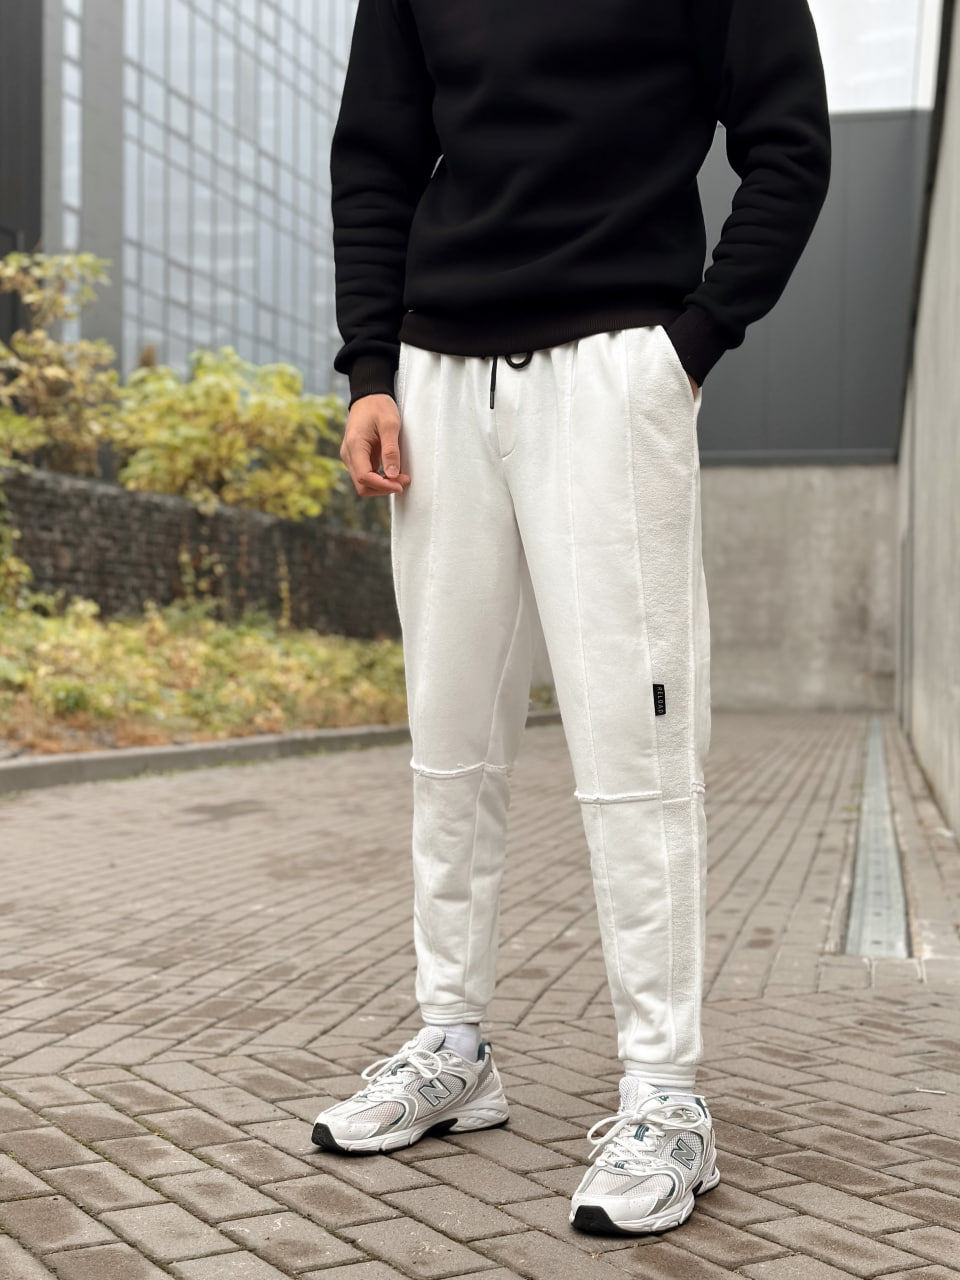 Чоловічі спортивні штани трикотажні Reload Rough молочні / Спортивки завуженні стильні демісезонні - Фото 1